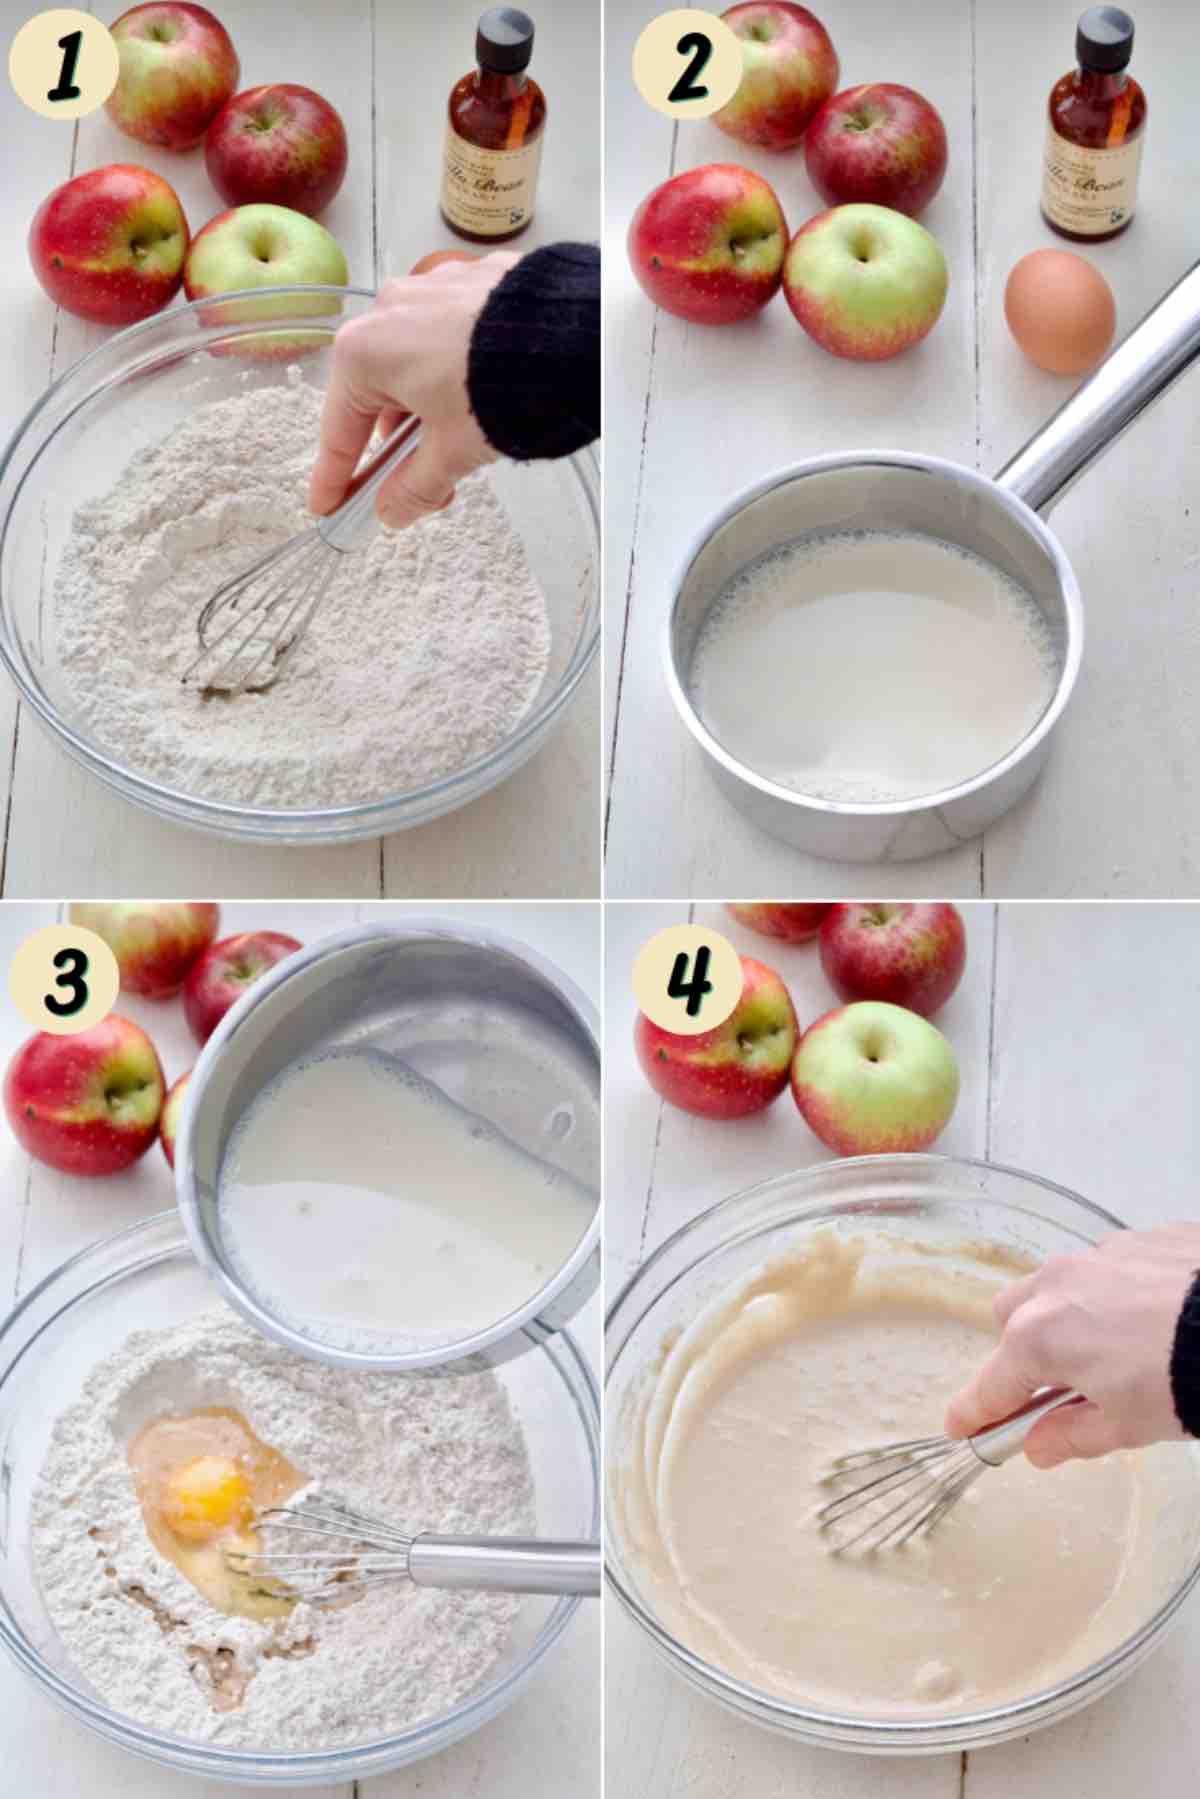 Process of preparing pancake batter.